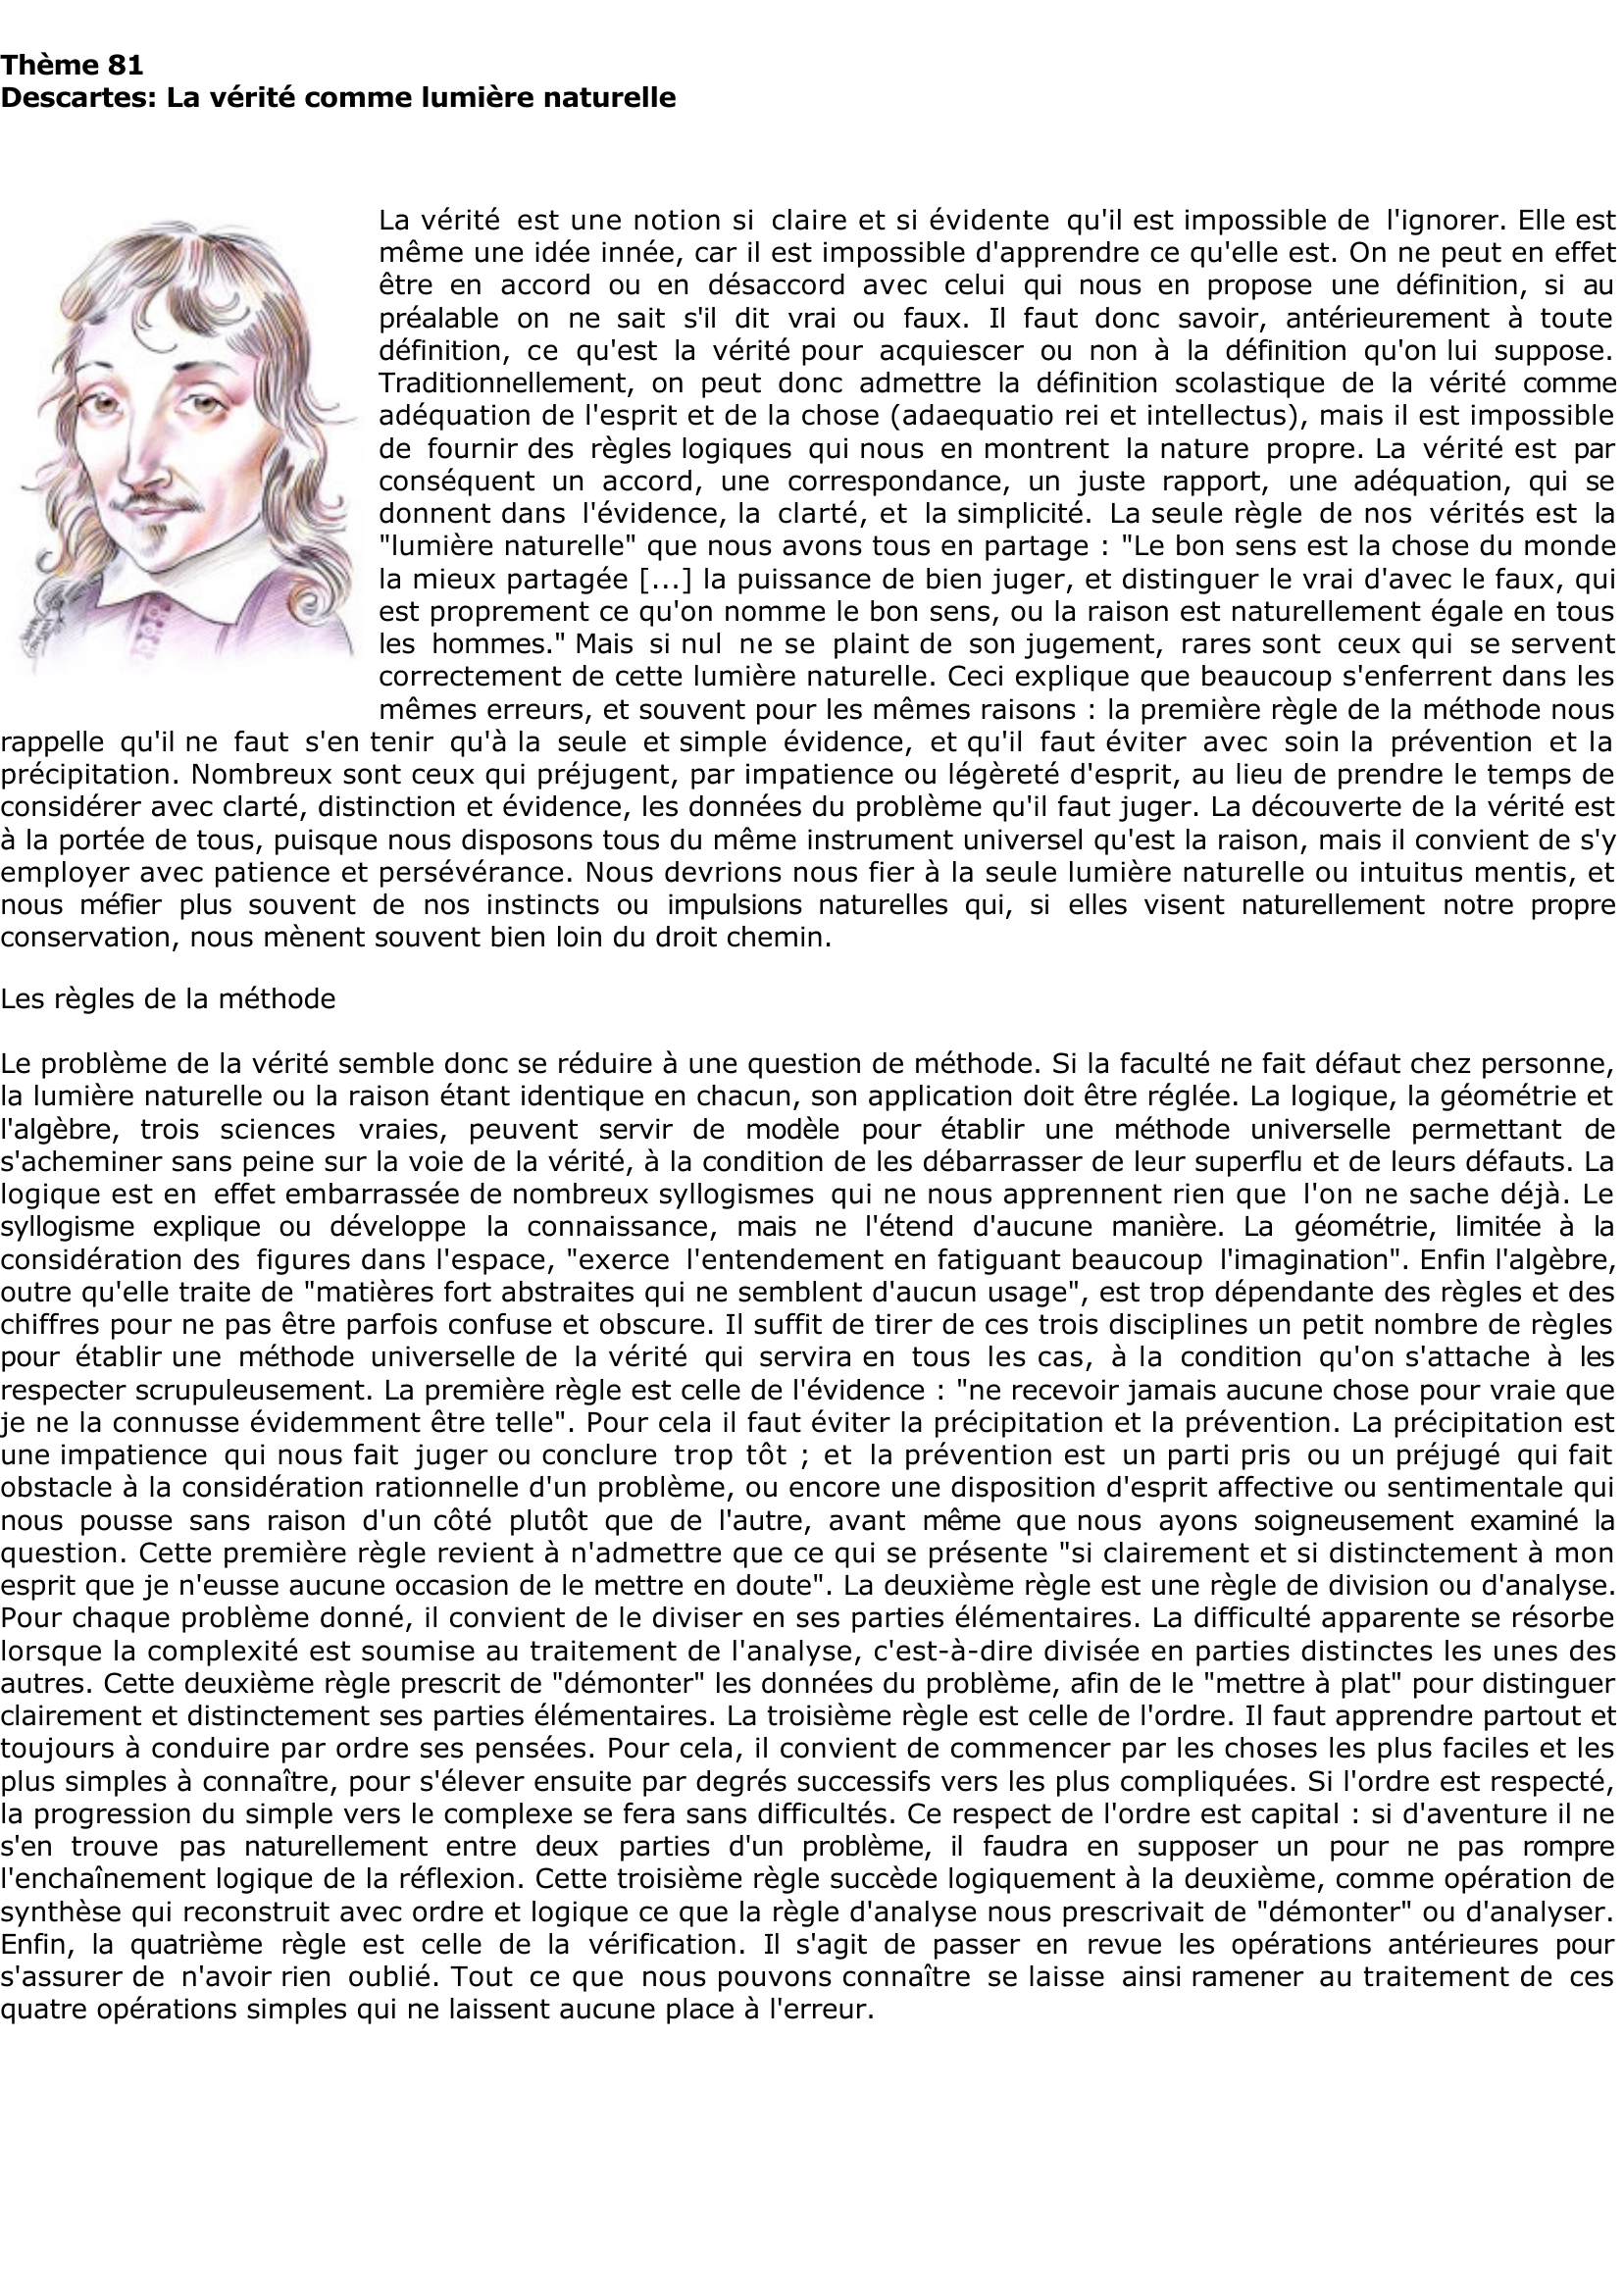 Prévisualisation du document Descartes: La vérité comme lumière naturelle